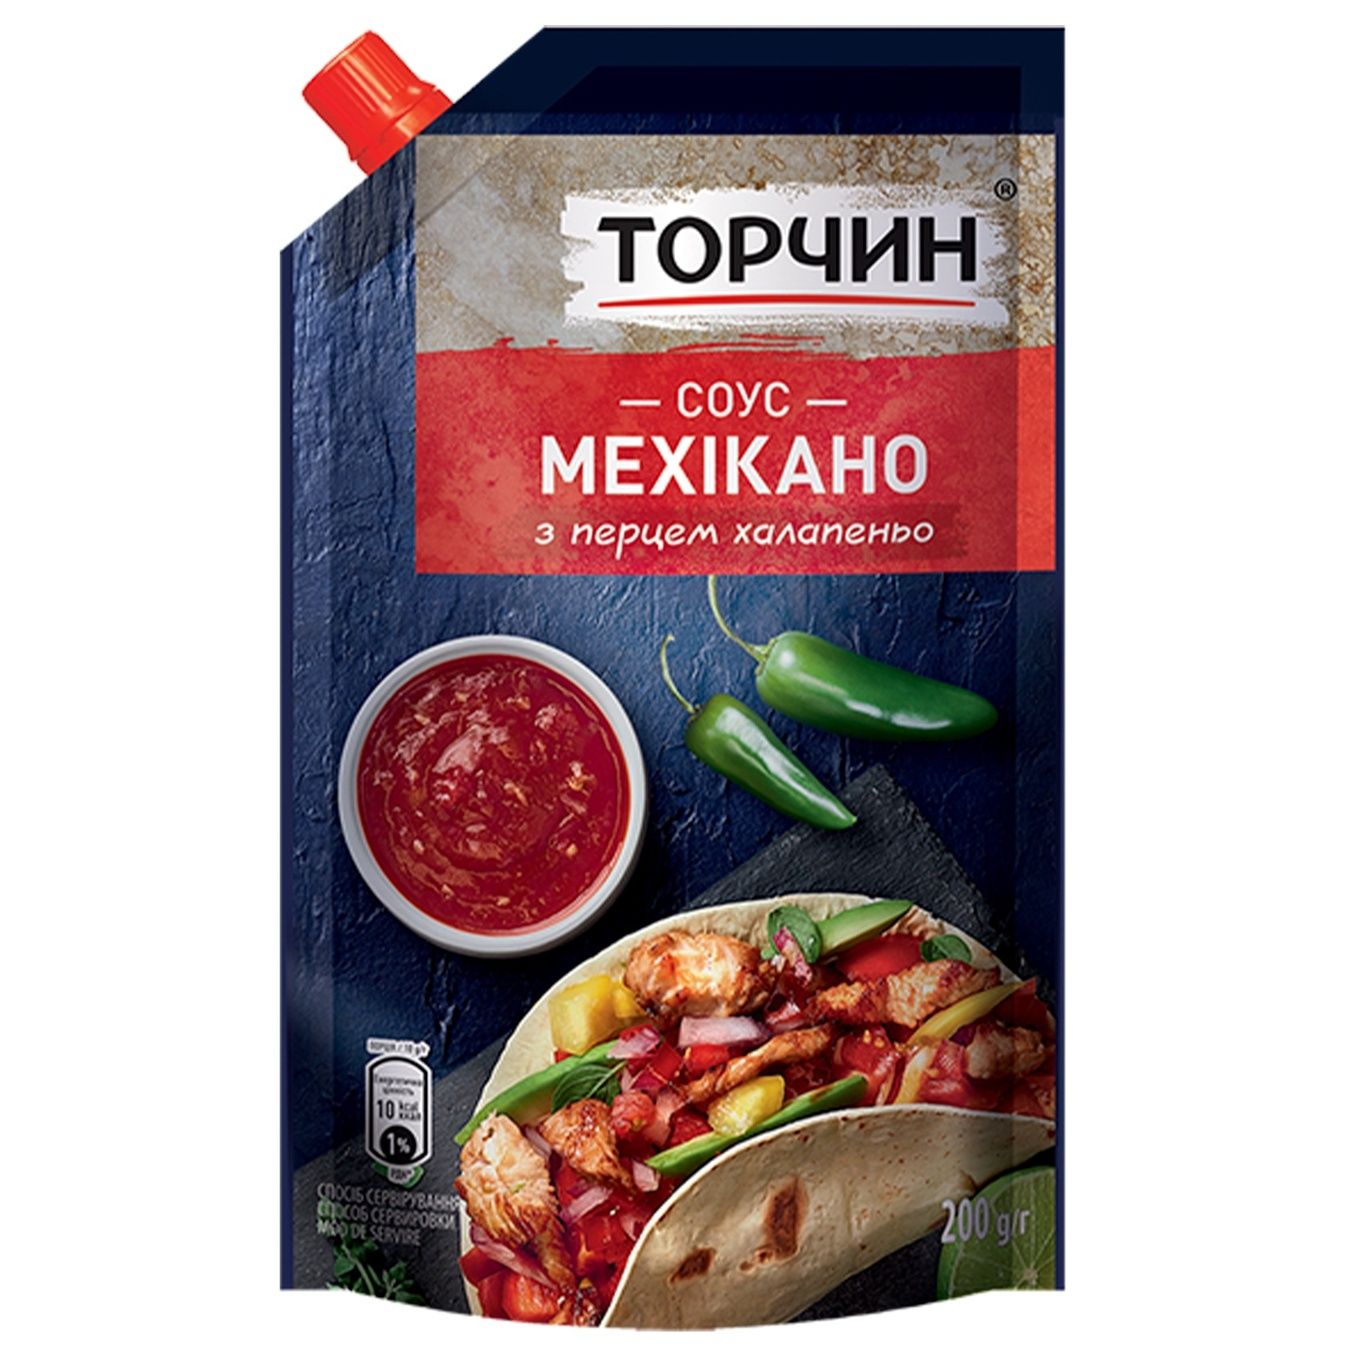 Torchyn Mexіkano sauce 200g